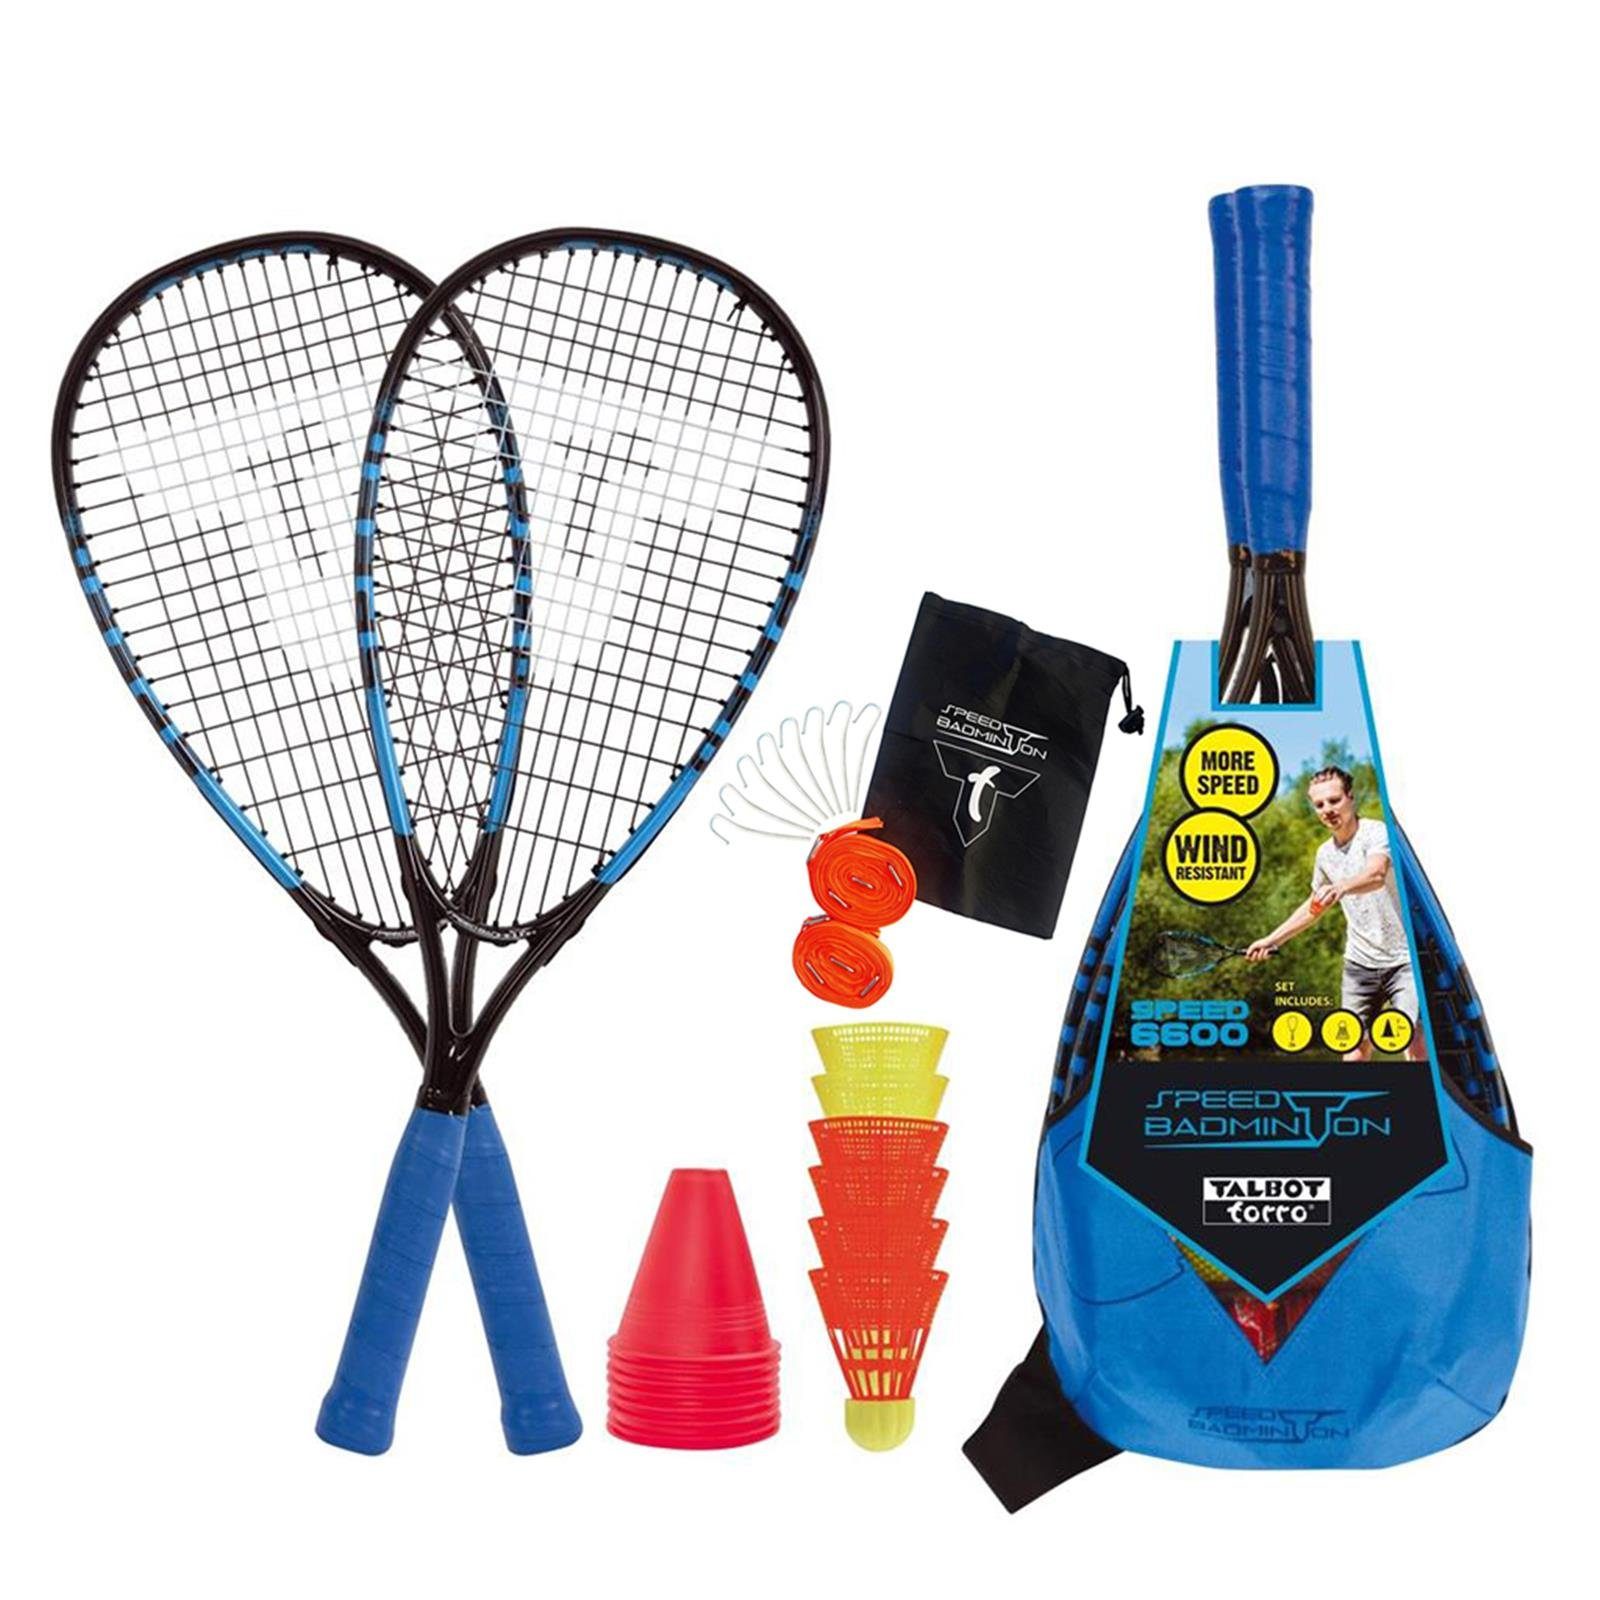 Talbot-Torro Speed-Badmintonschläger Speed-Badminton Line 6600 + Speed Set Court